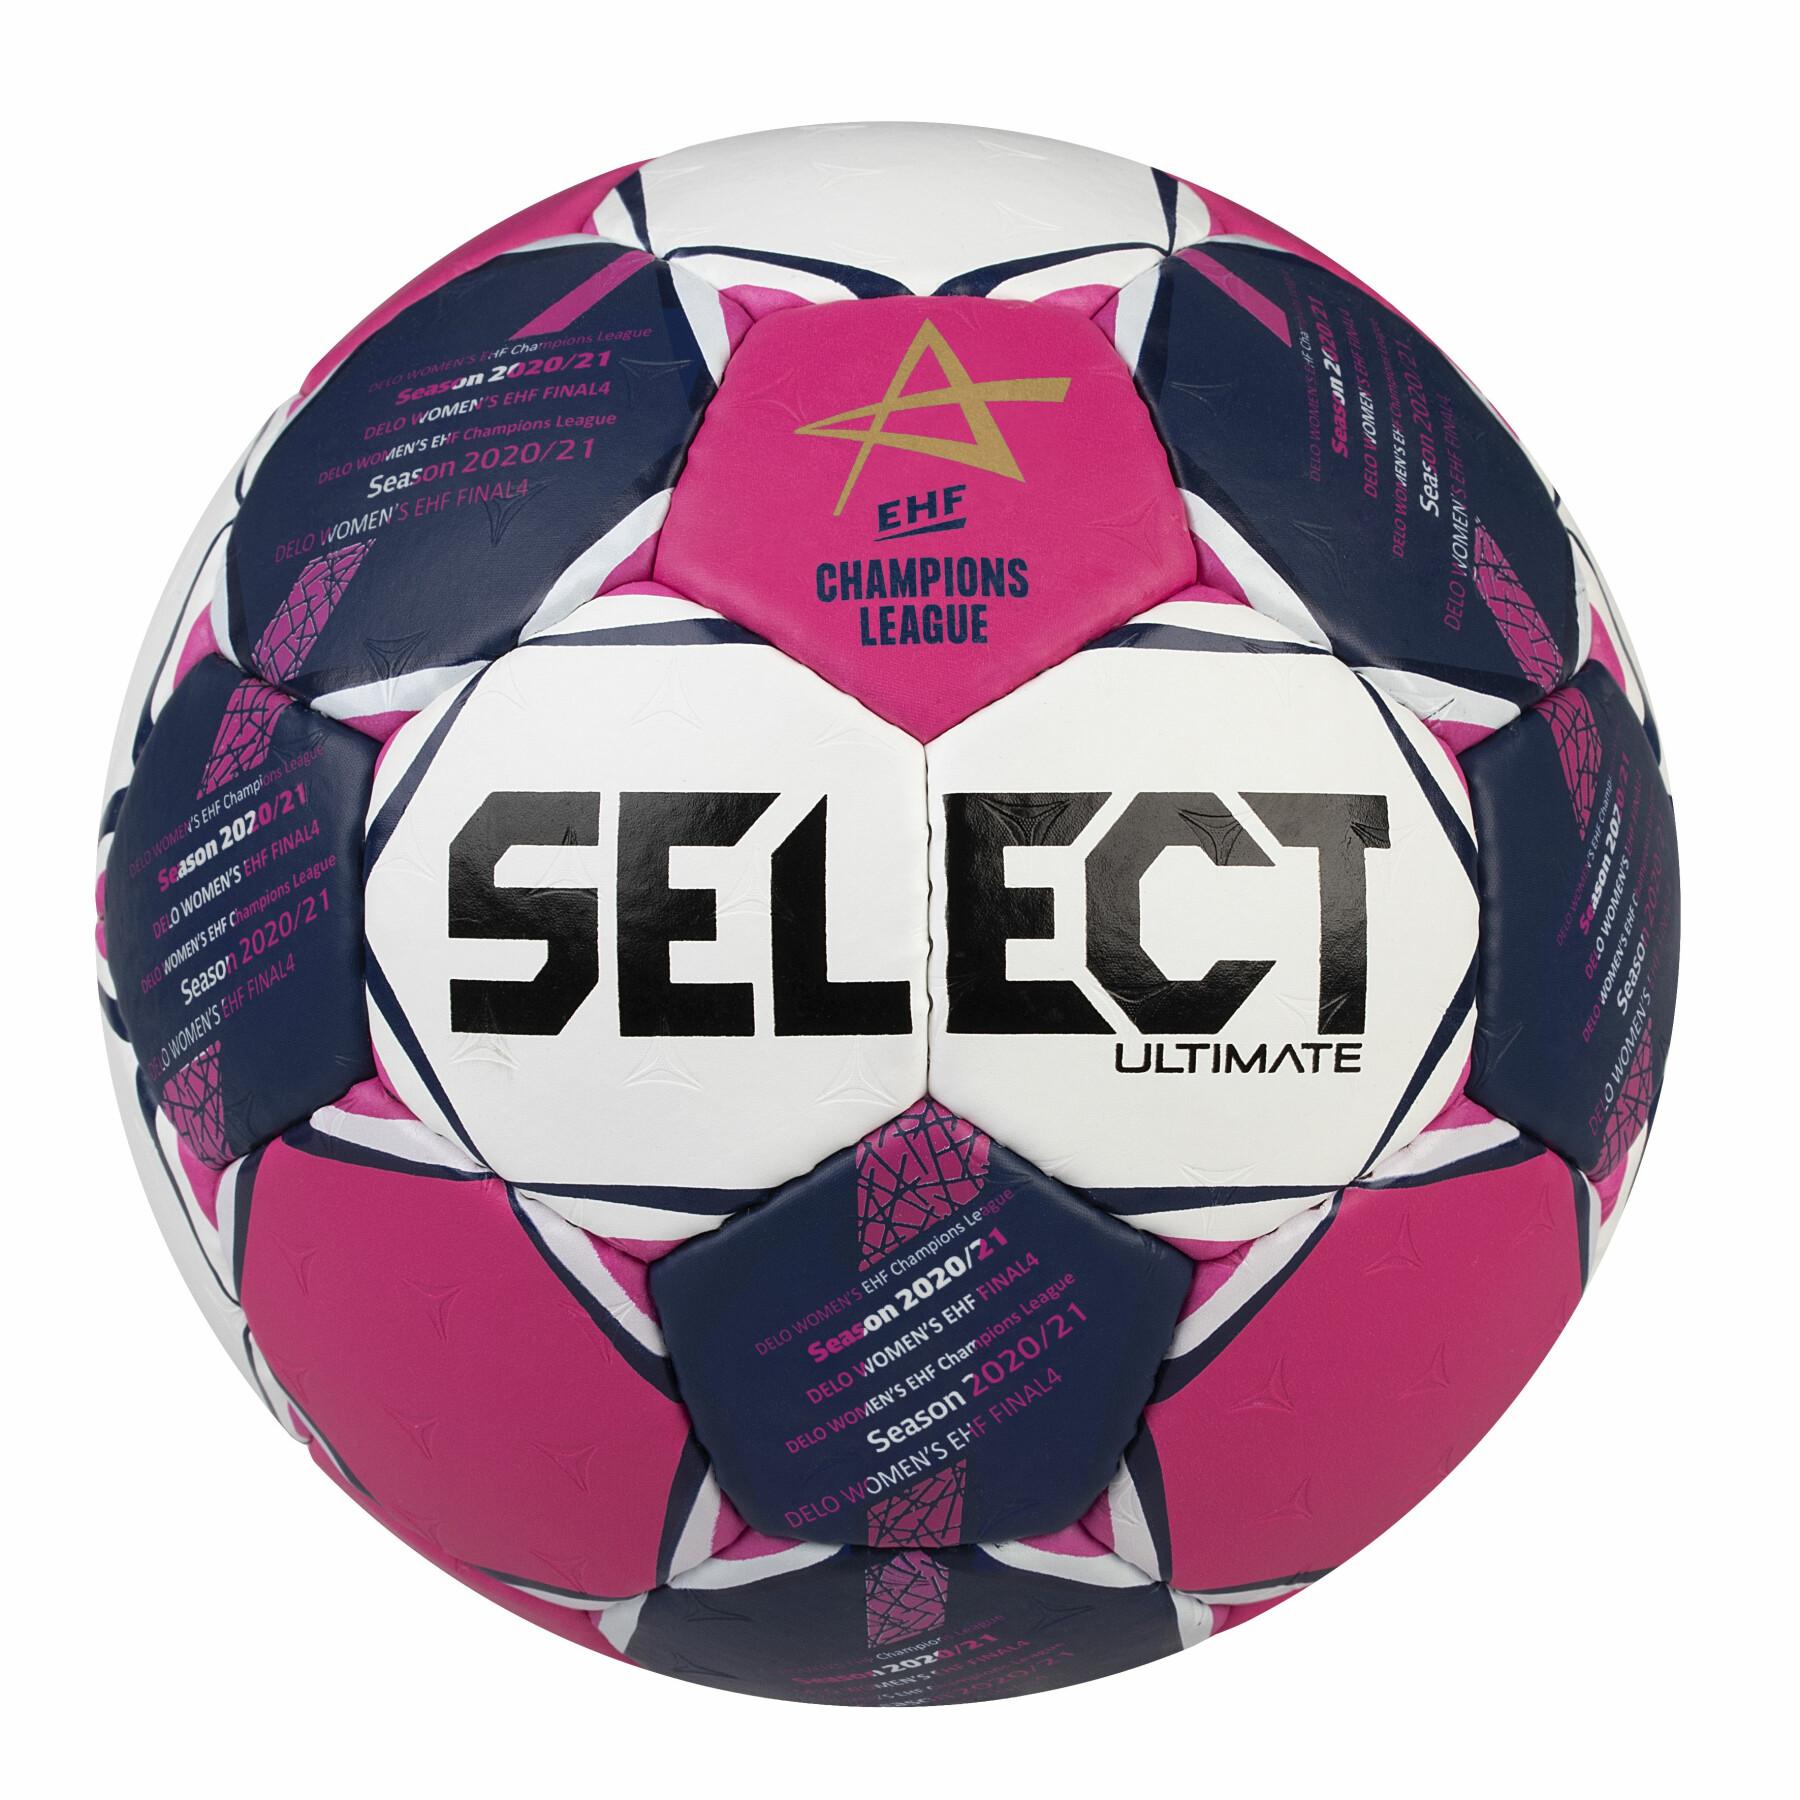 Ballon Officiel Ultimate Champions League Women 2020/21